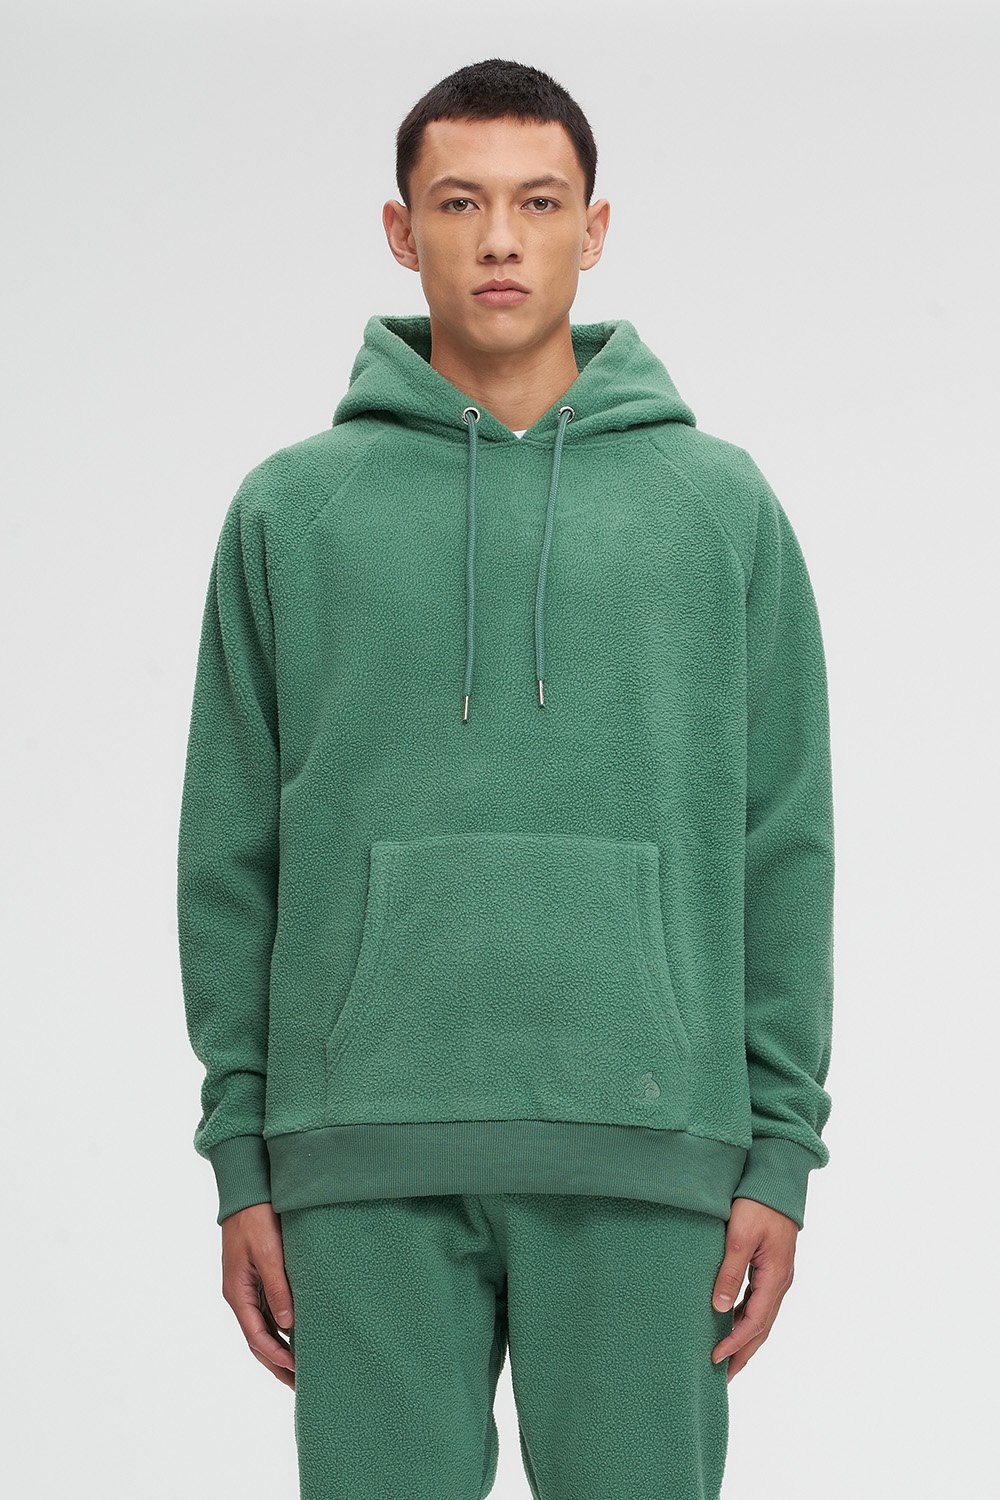 Kuwalla Tee green hoodie